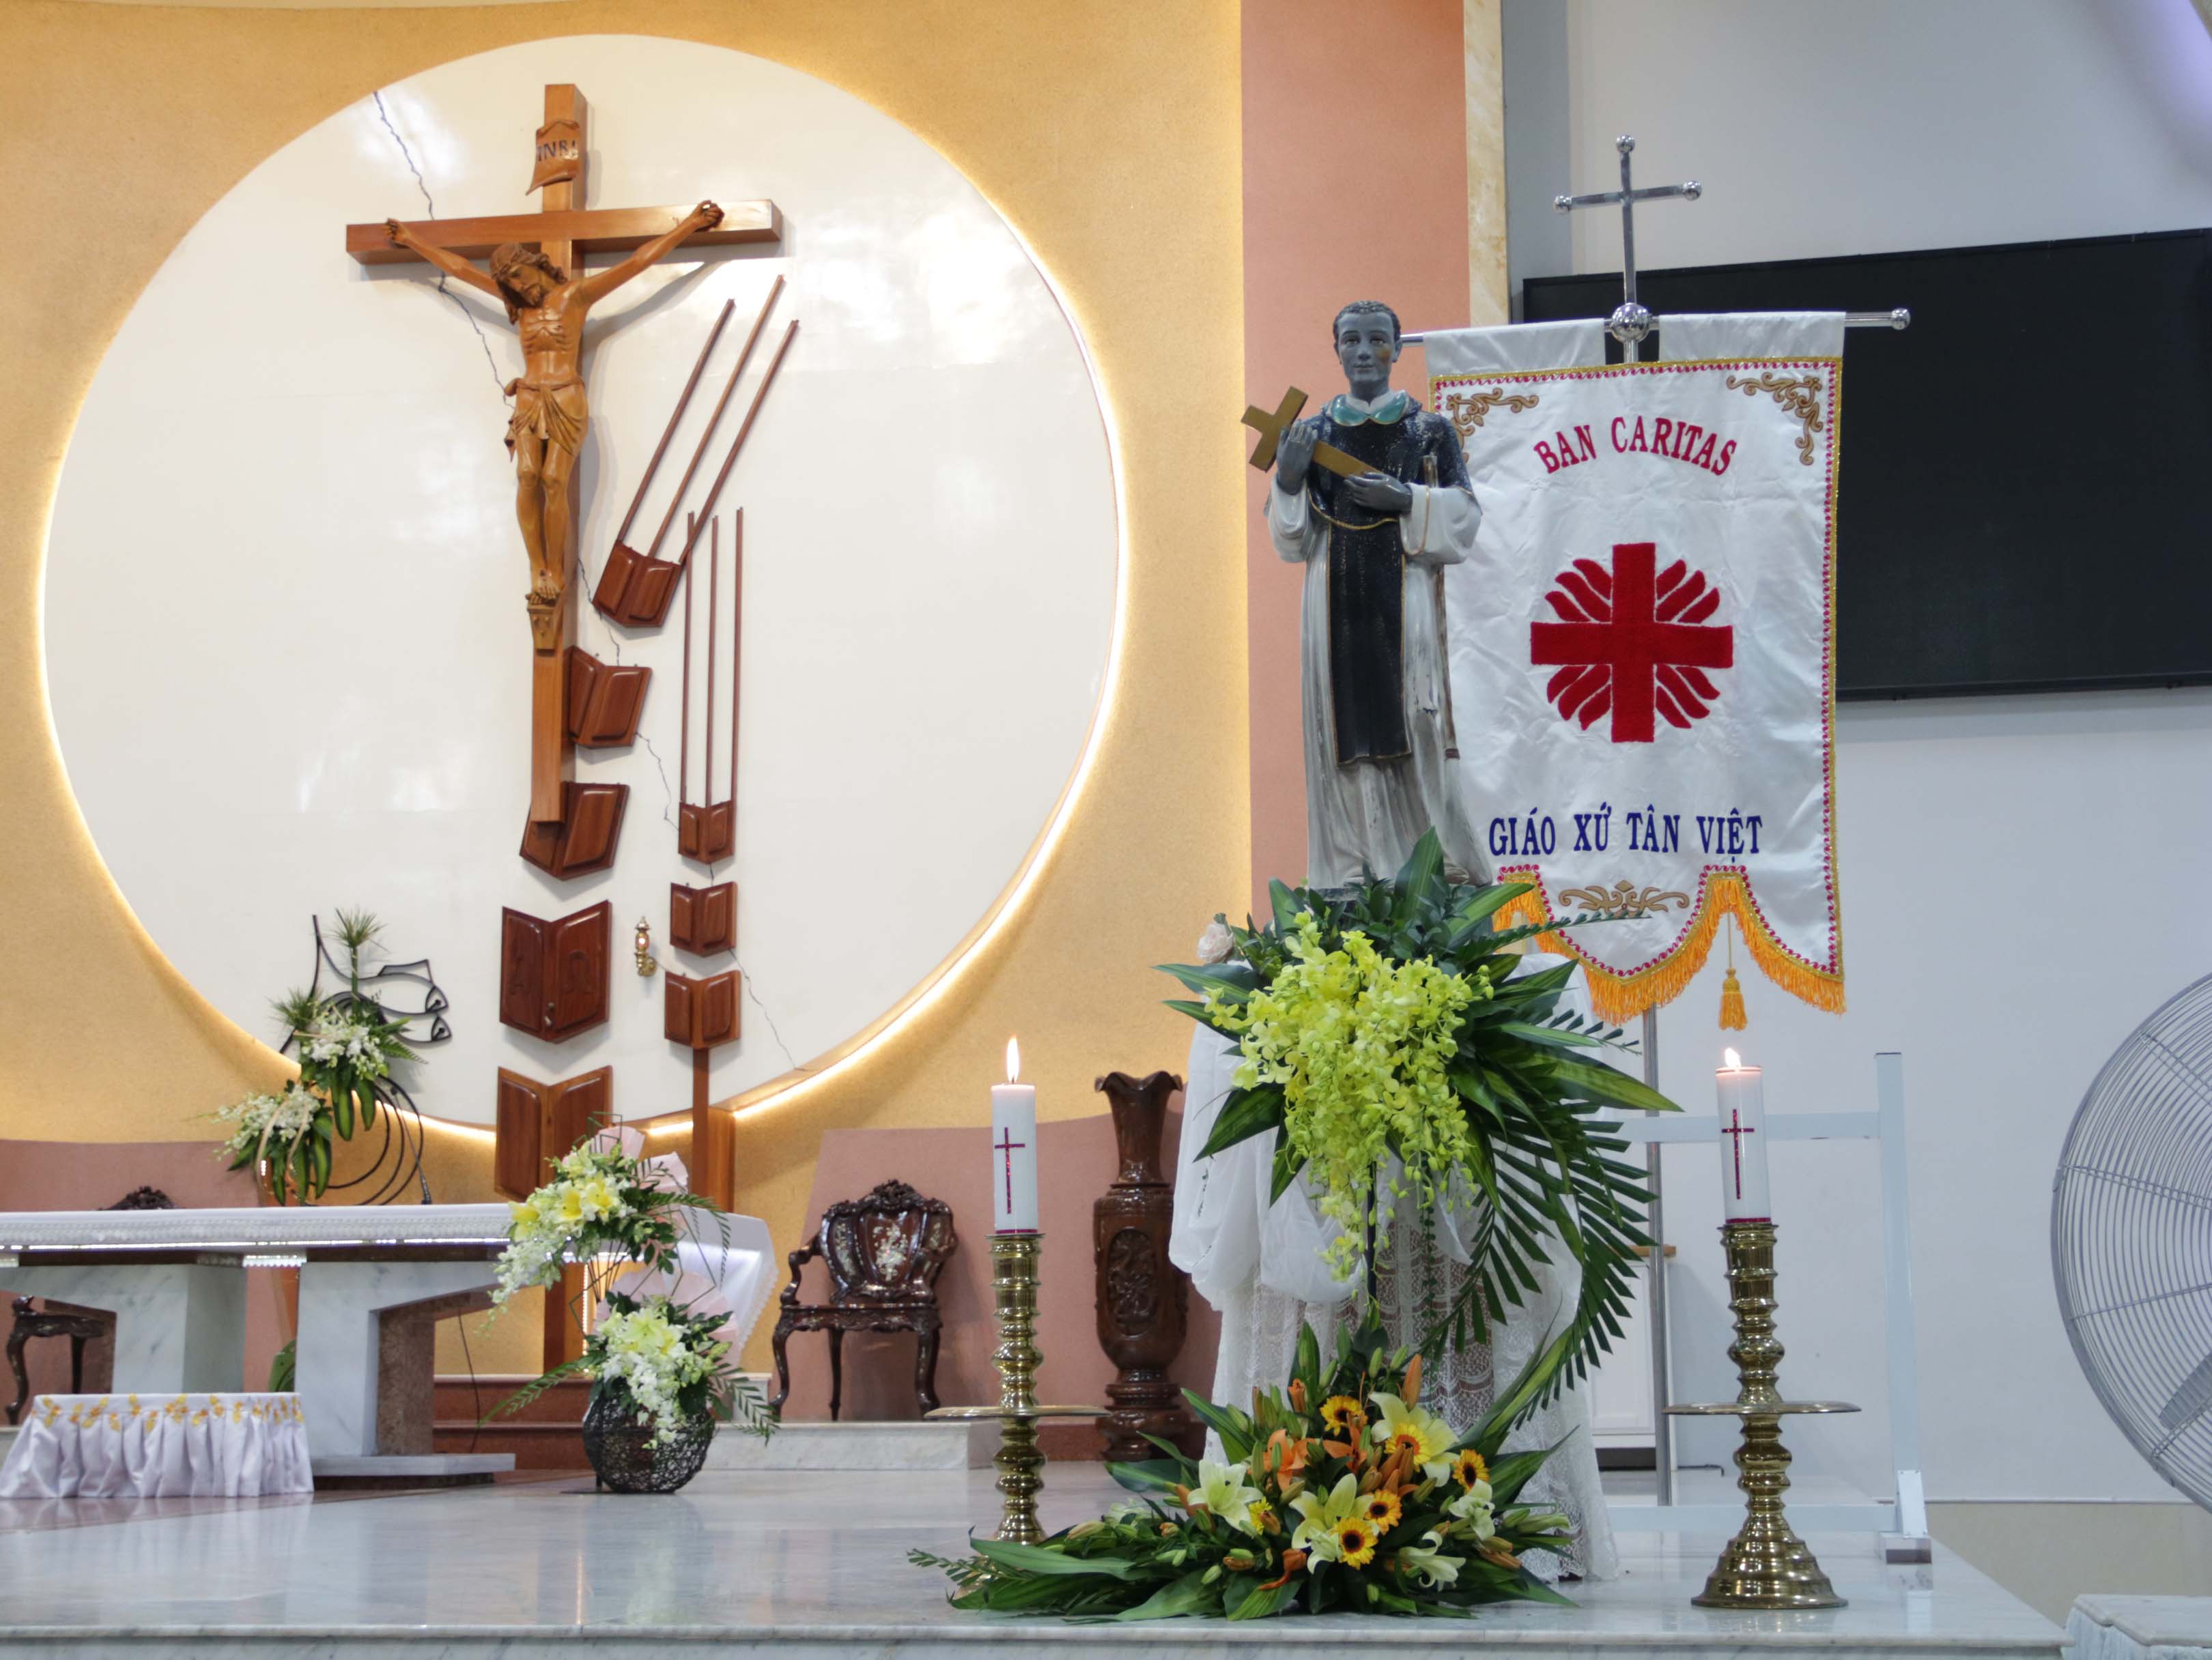 Giáo xứ Tân Việt: Ban Caritas mừng lễ bổn mạng ngày 3-11-2020